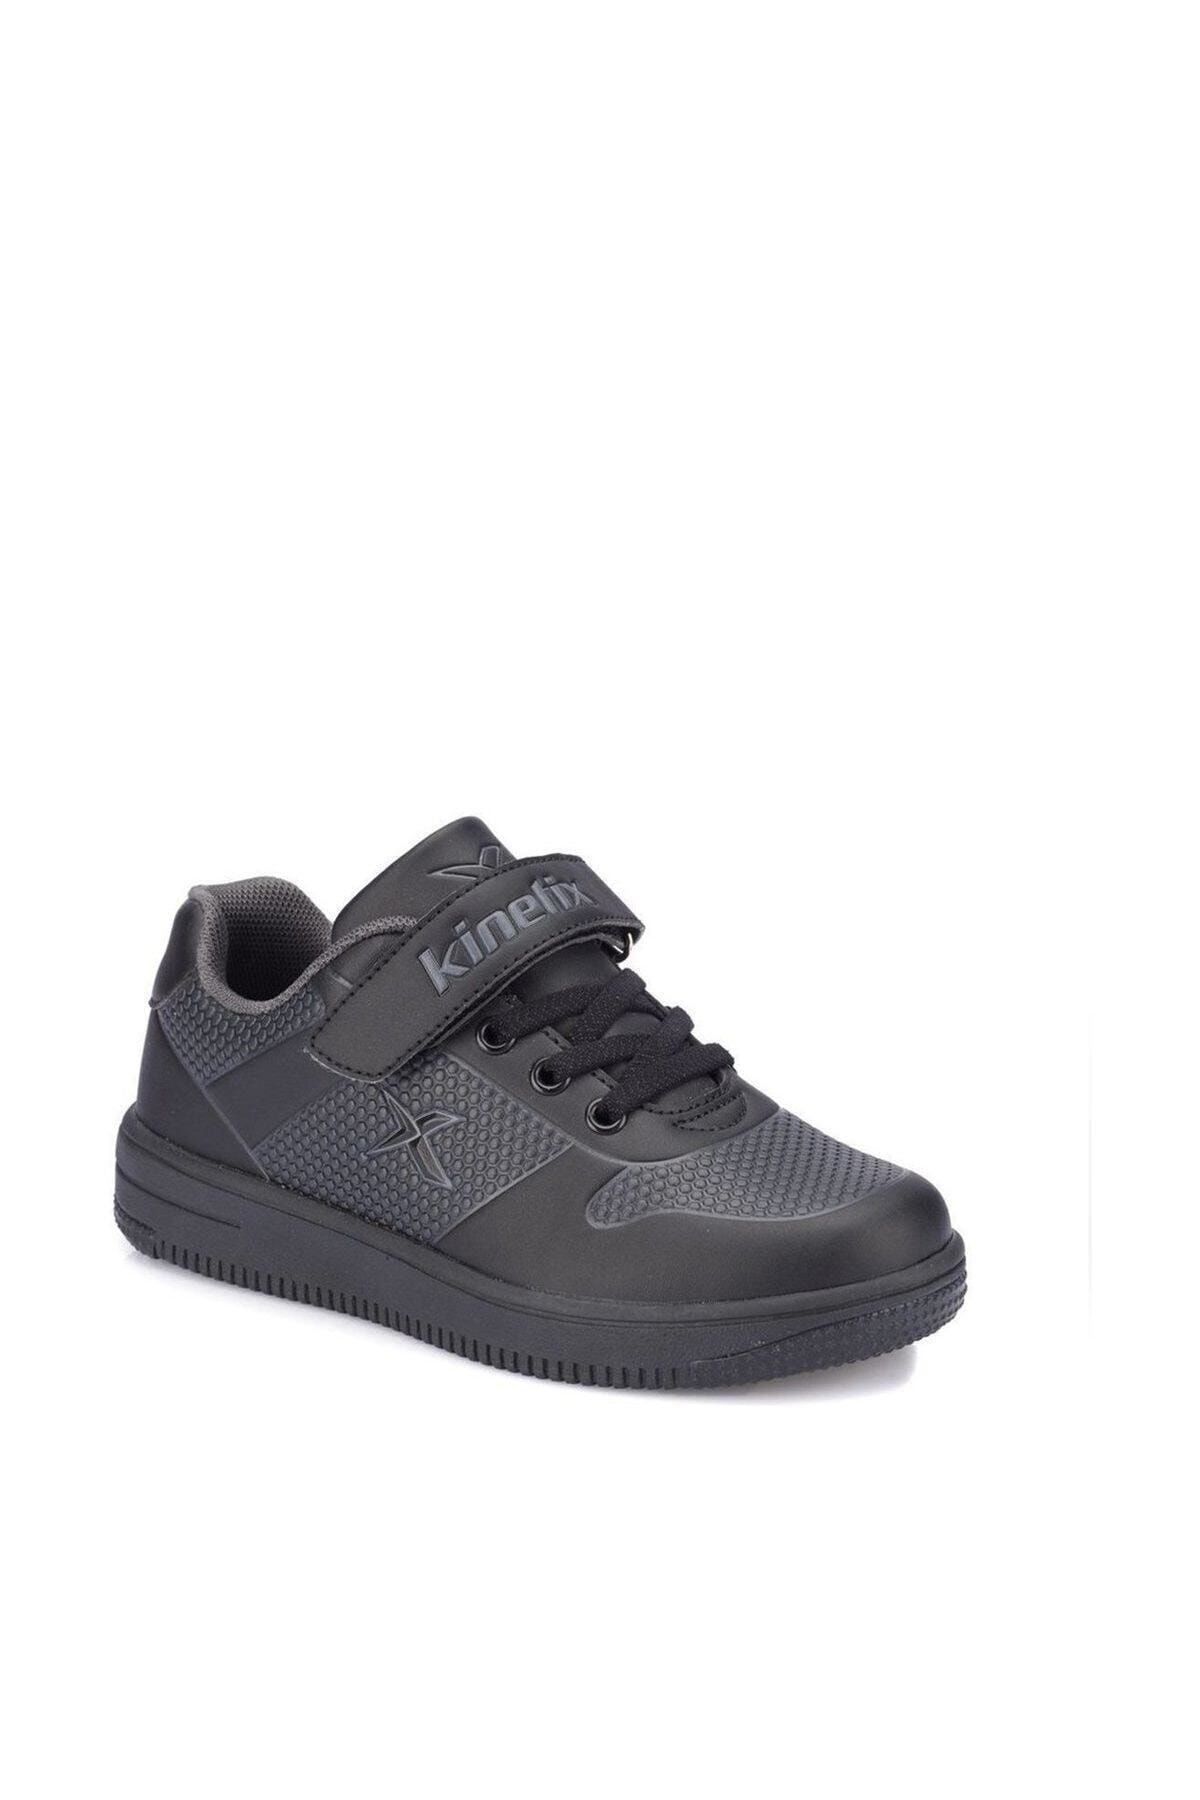 Kinetix Dinro Siyah Erkek Çocuk Sneaker Ayakkabı 100322240